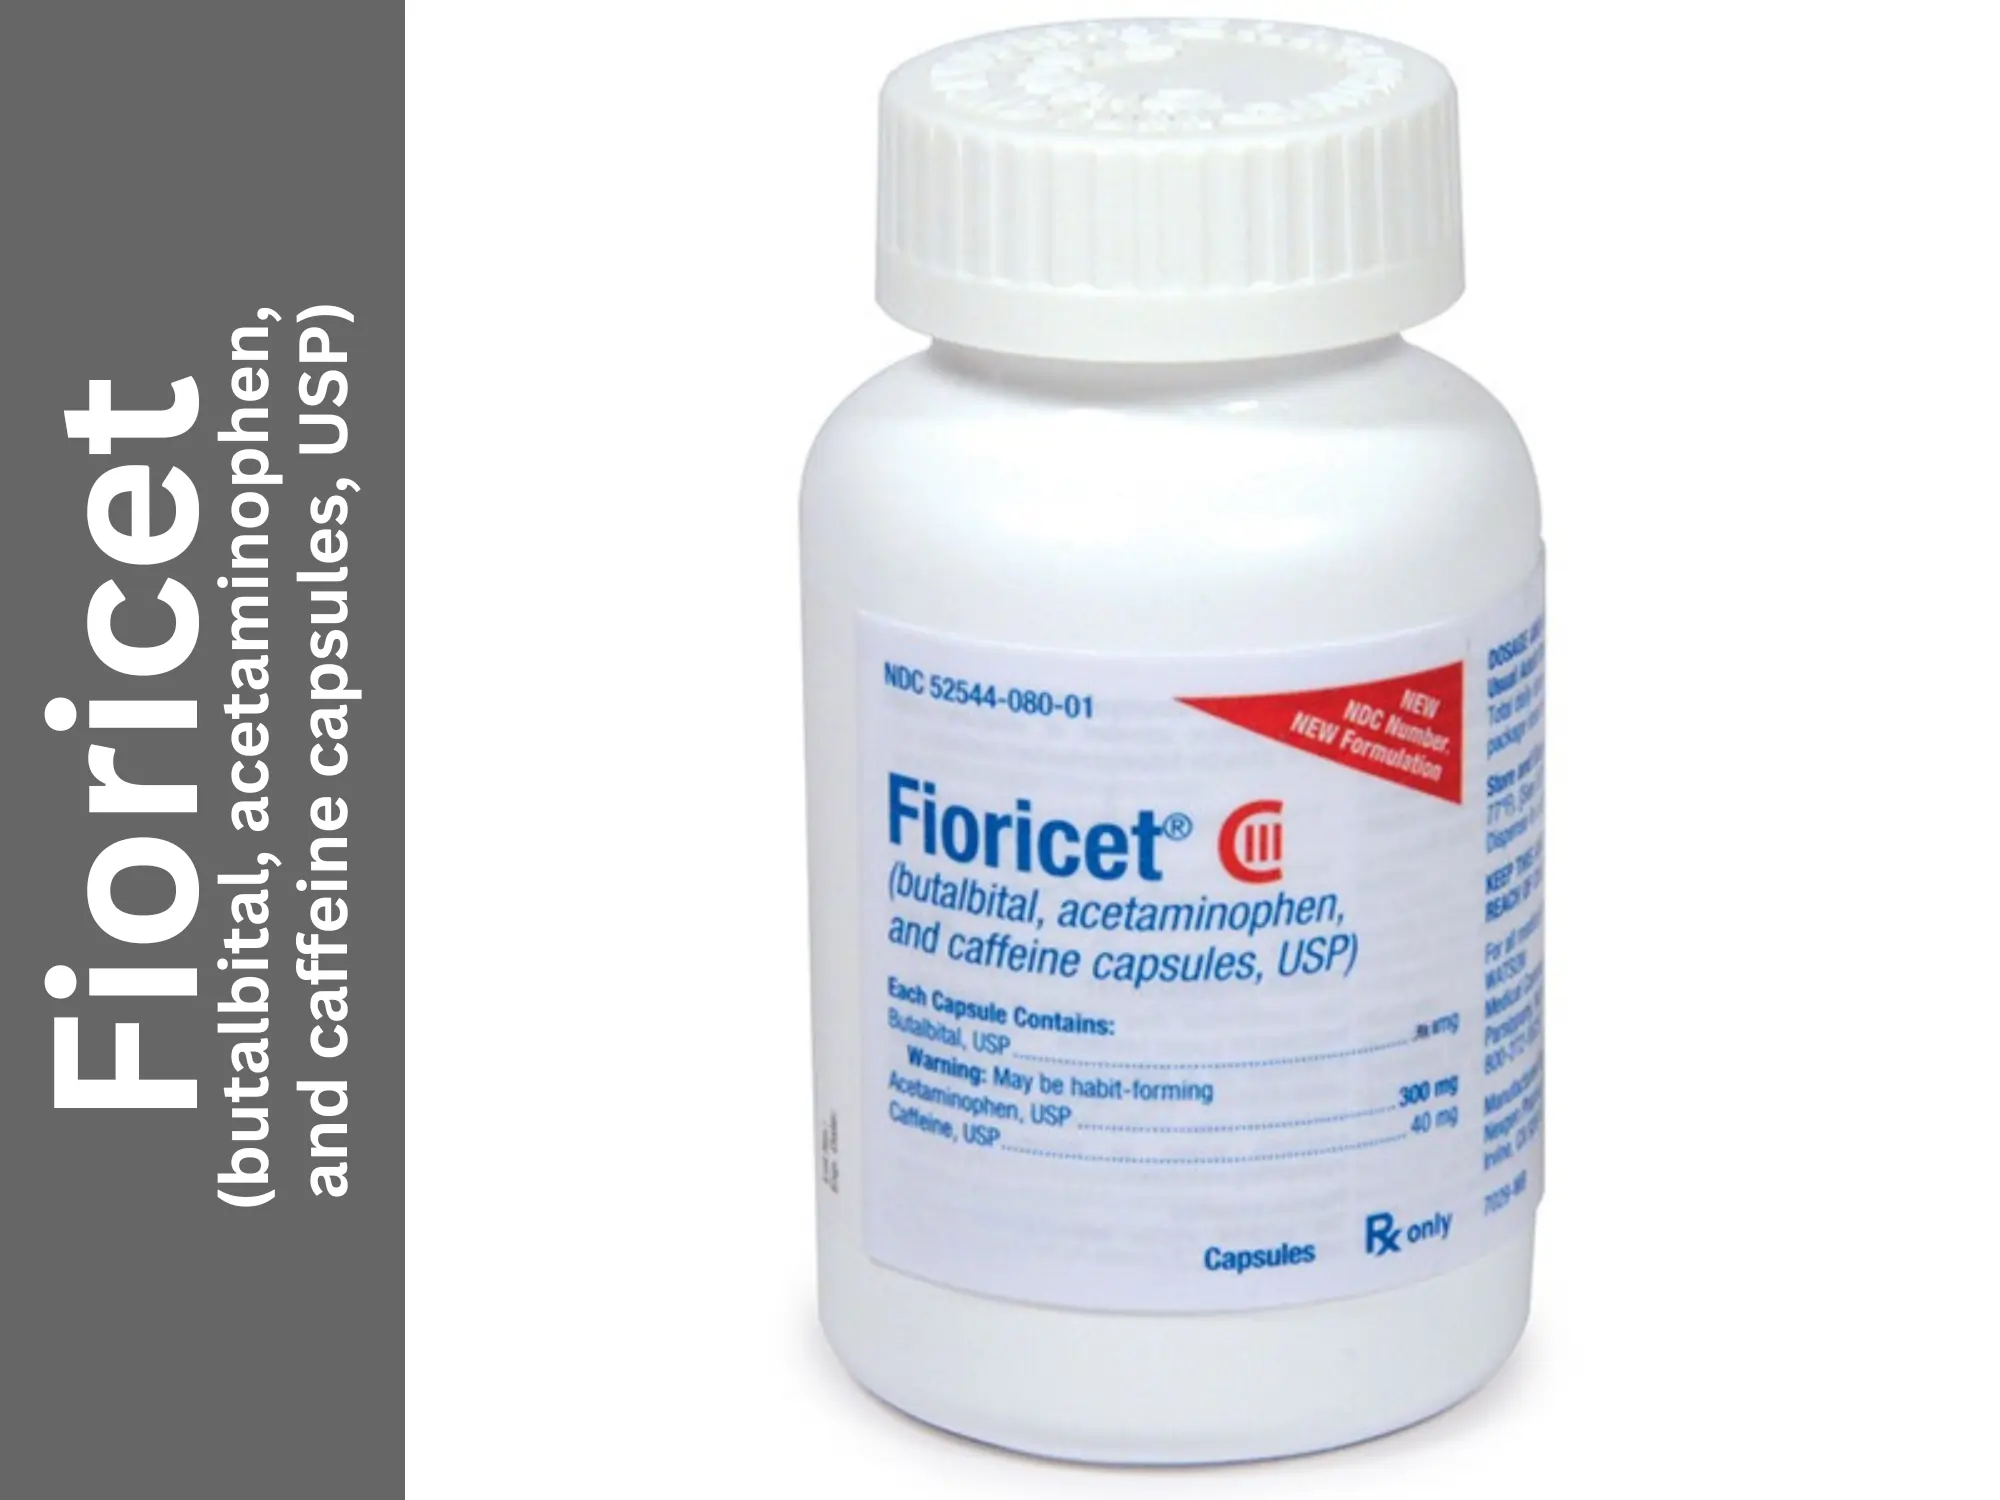 Order fioricet and butalbital capsules online